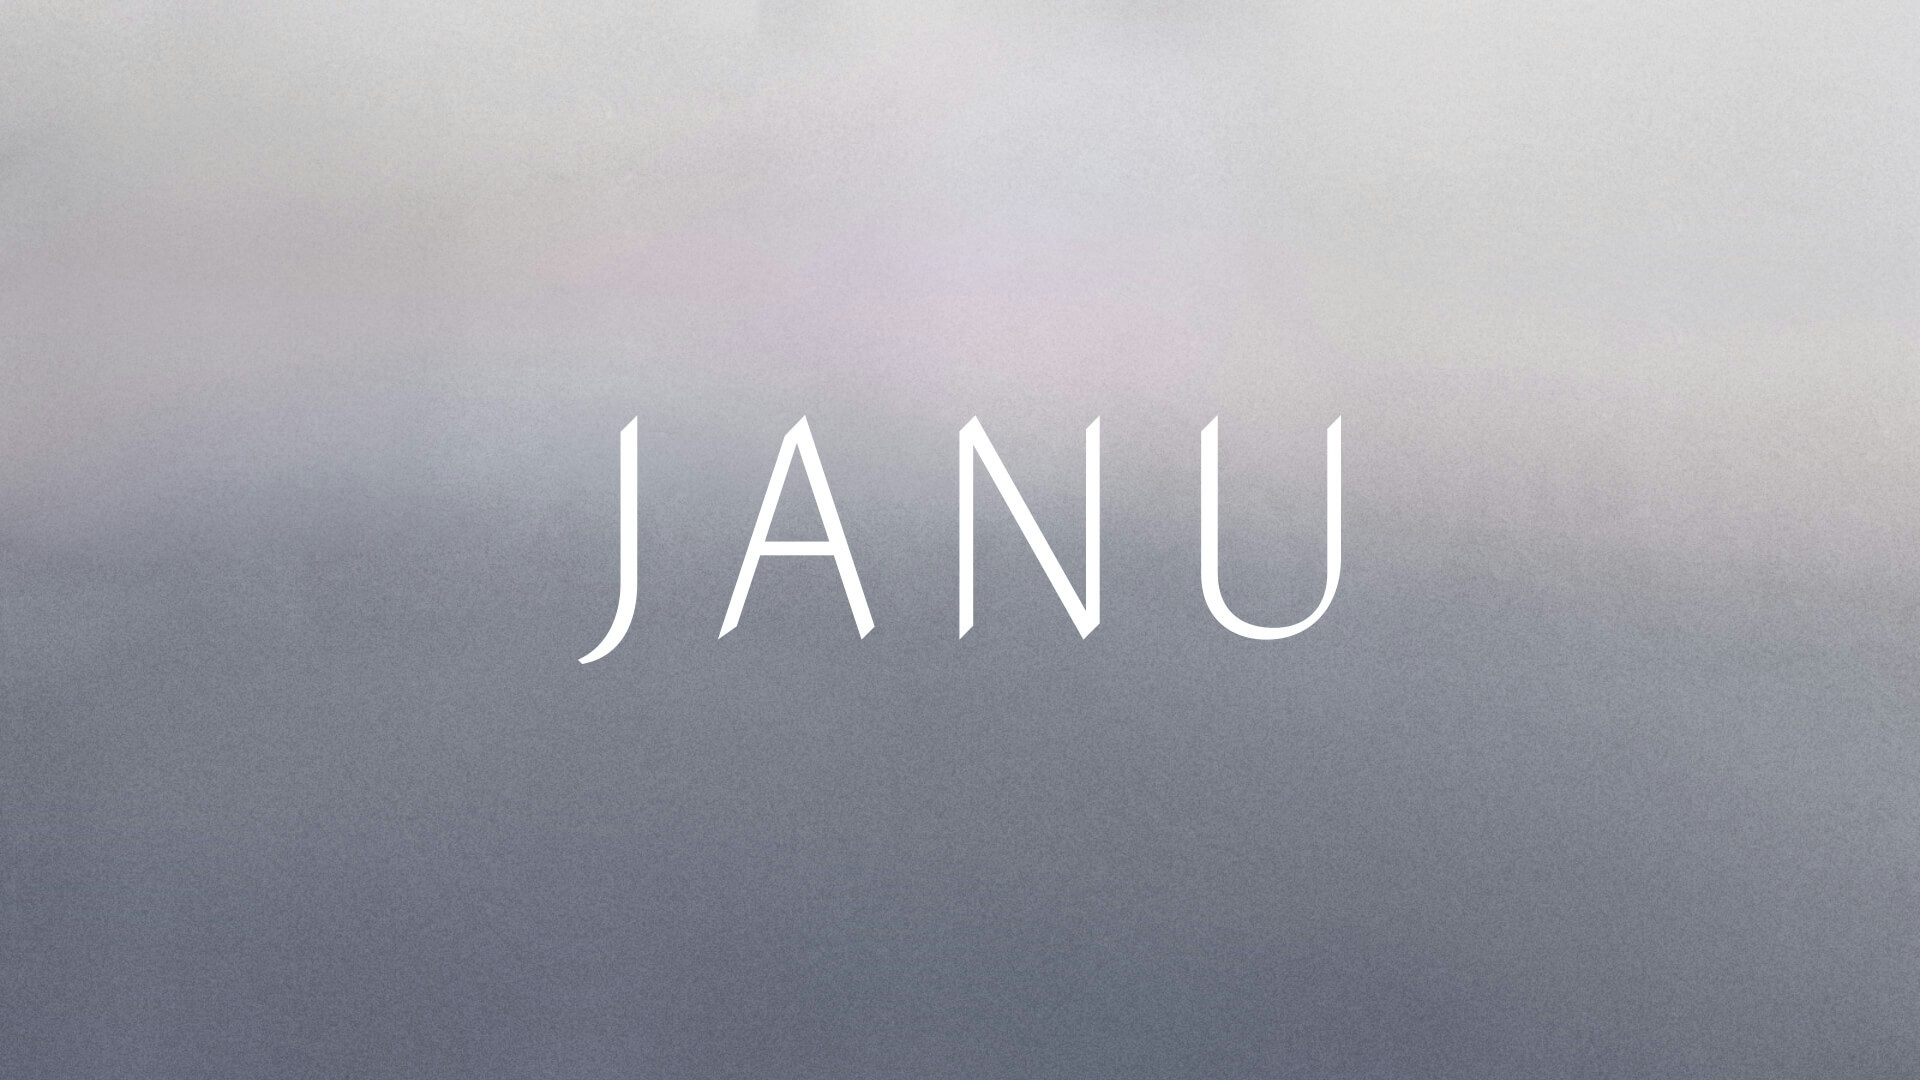 JANU Brand Identity Design